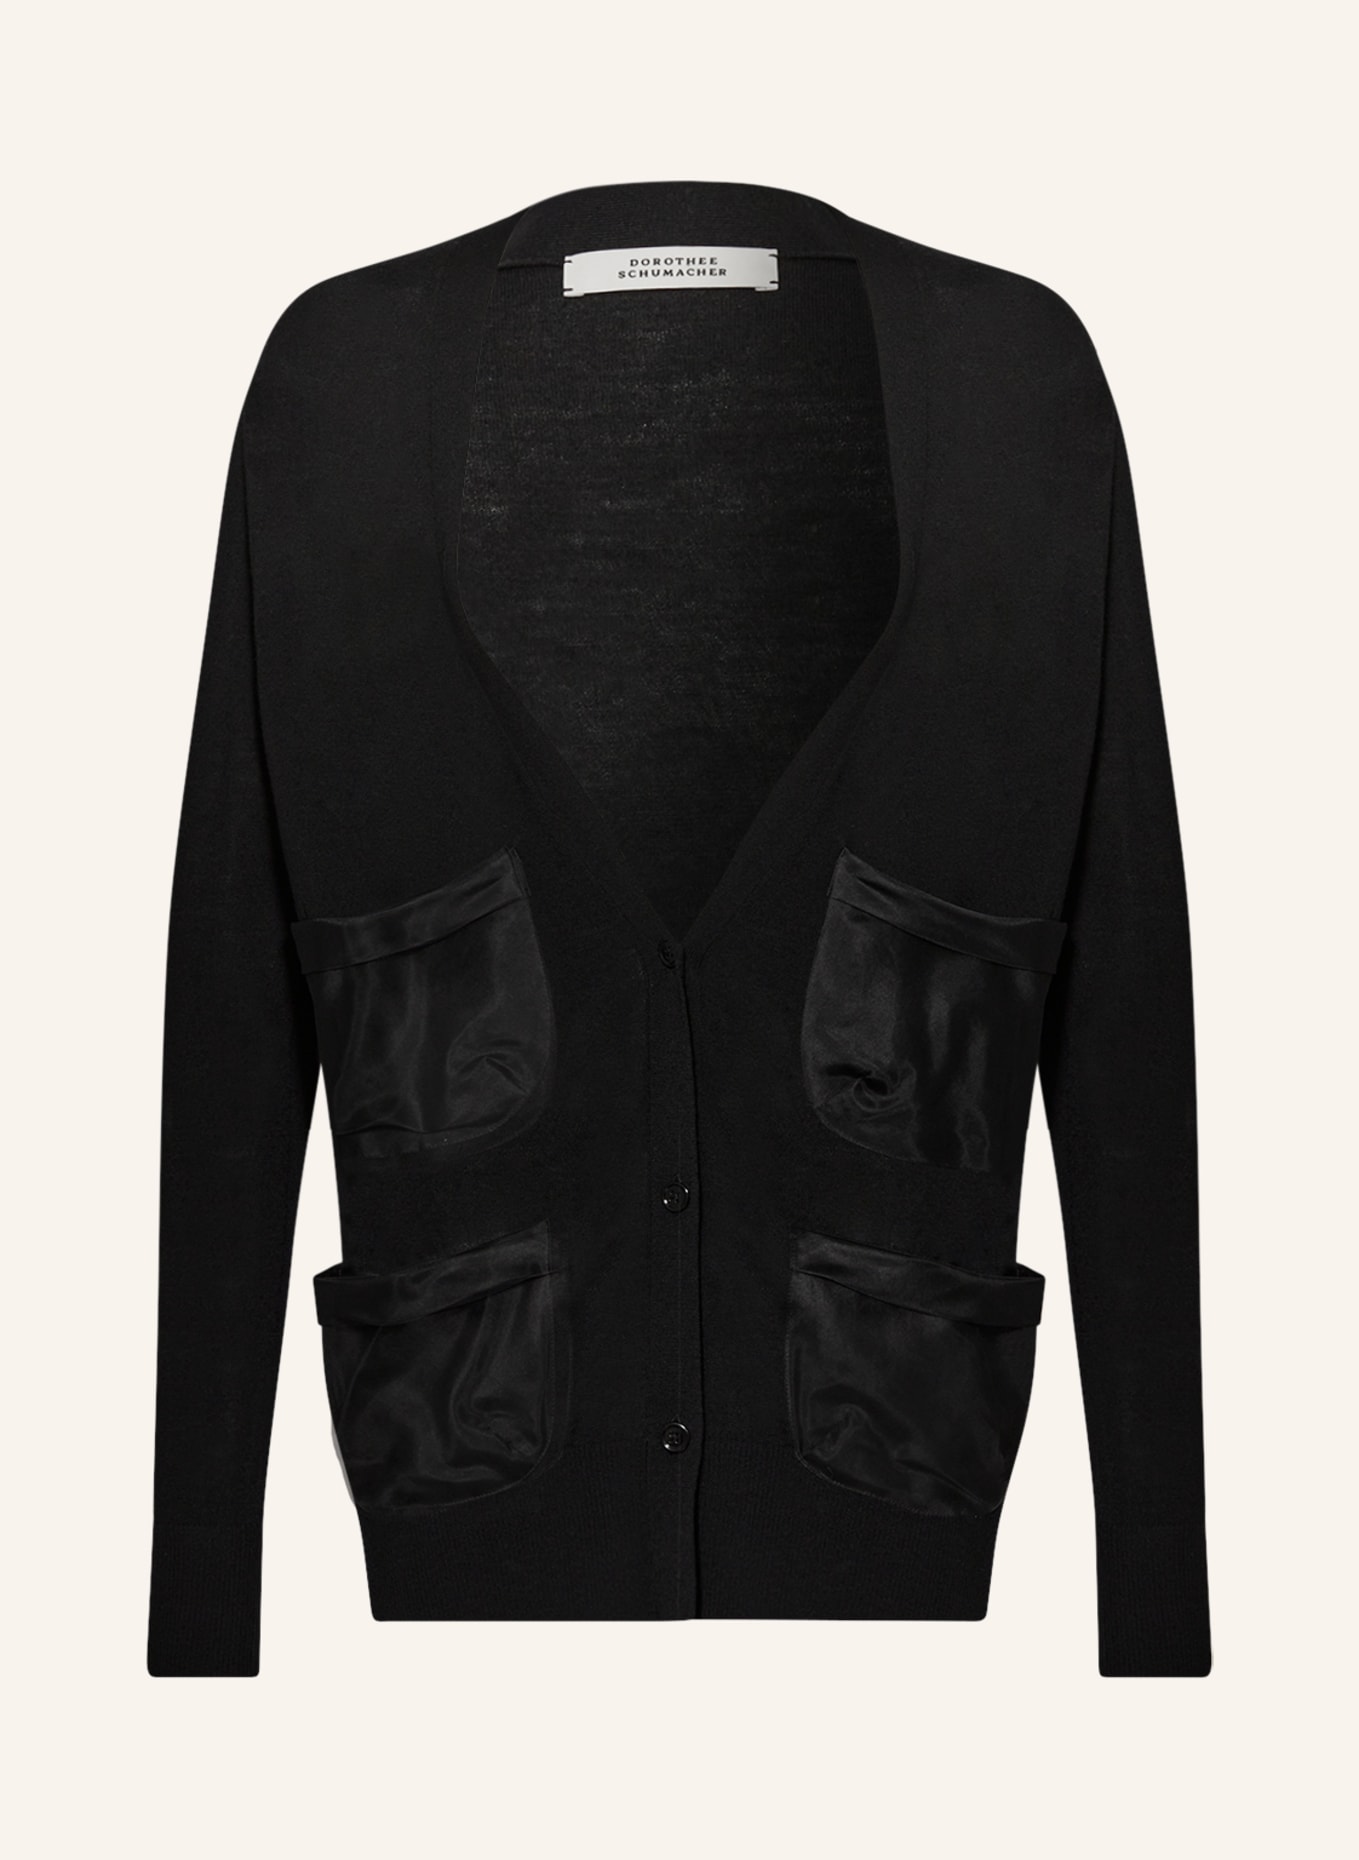 DOROTHEE SCHUMACHER Cardigan in merino wool, Color: BLACK (Image 1)